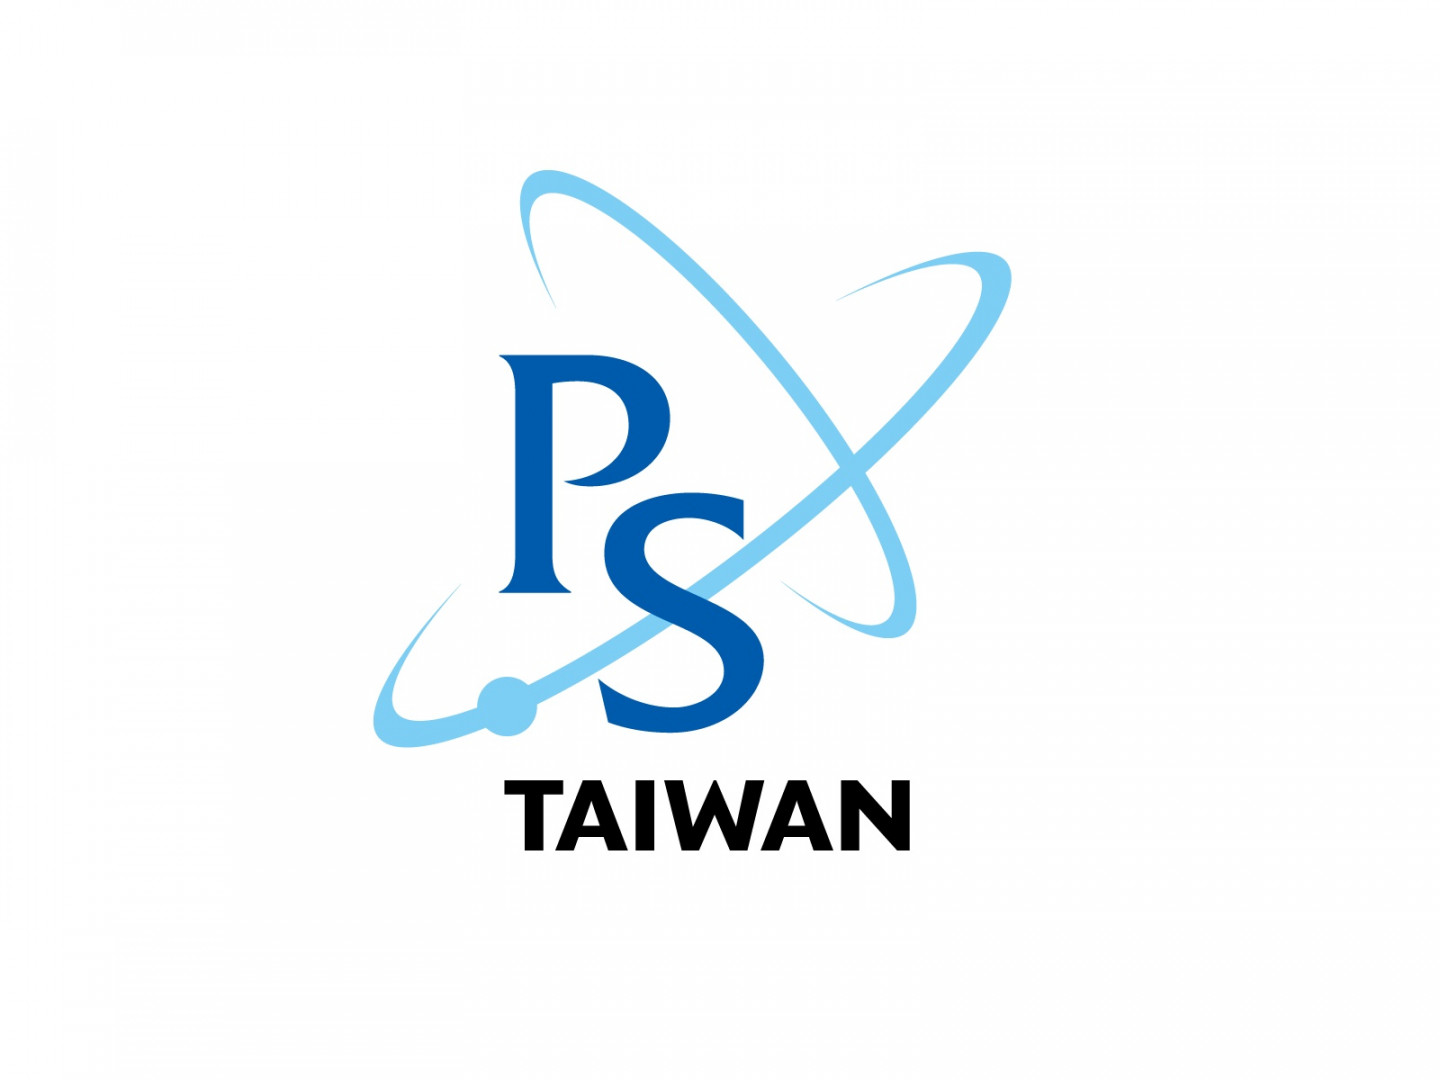  2022台灣物理年會公開徵求主題論壇 